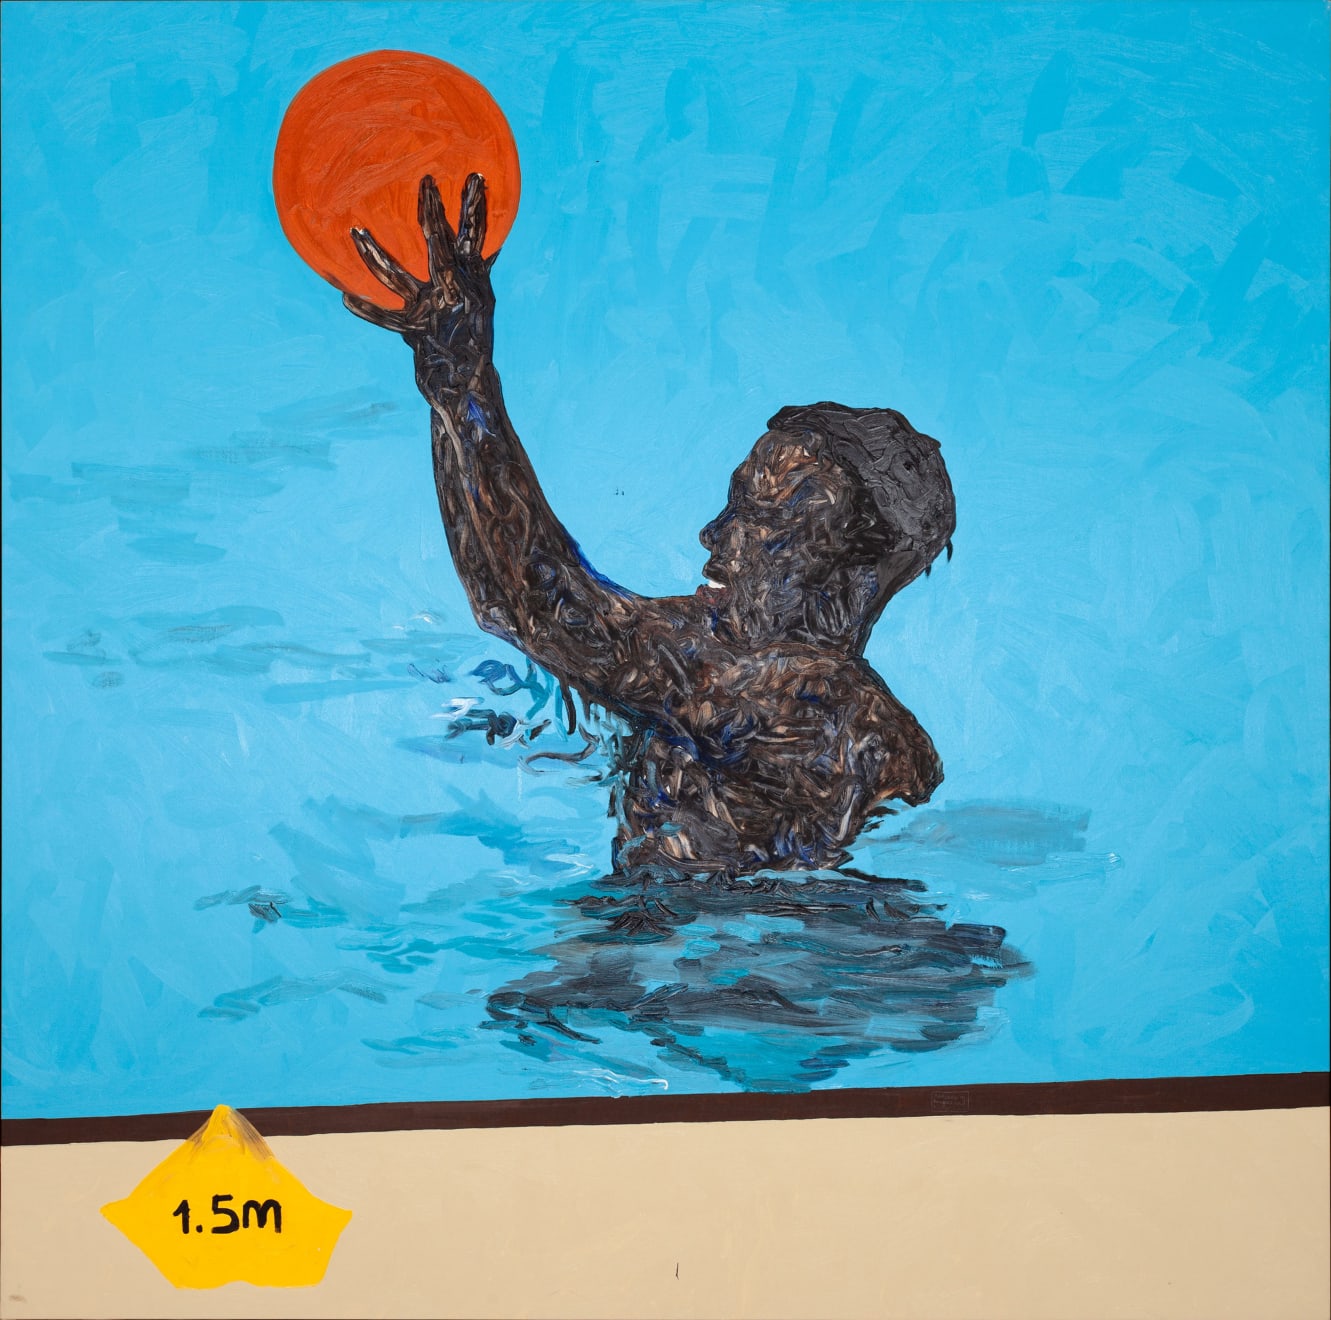 Amoako Boafo, ORANGE WATER BALL, 2022